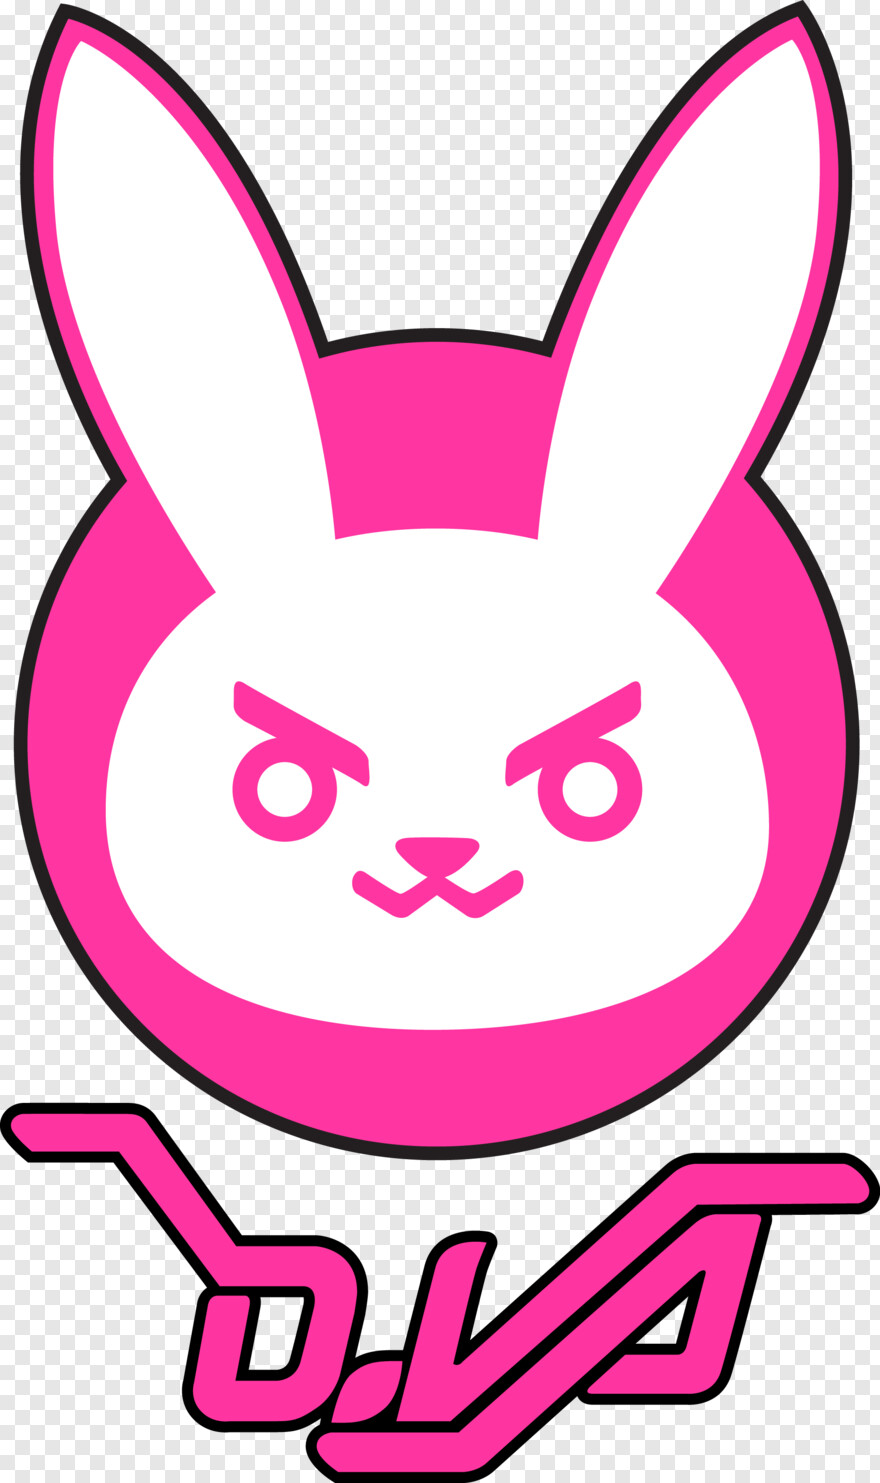 bugs-bunny # 536364